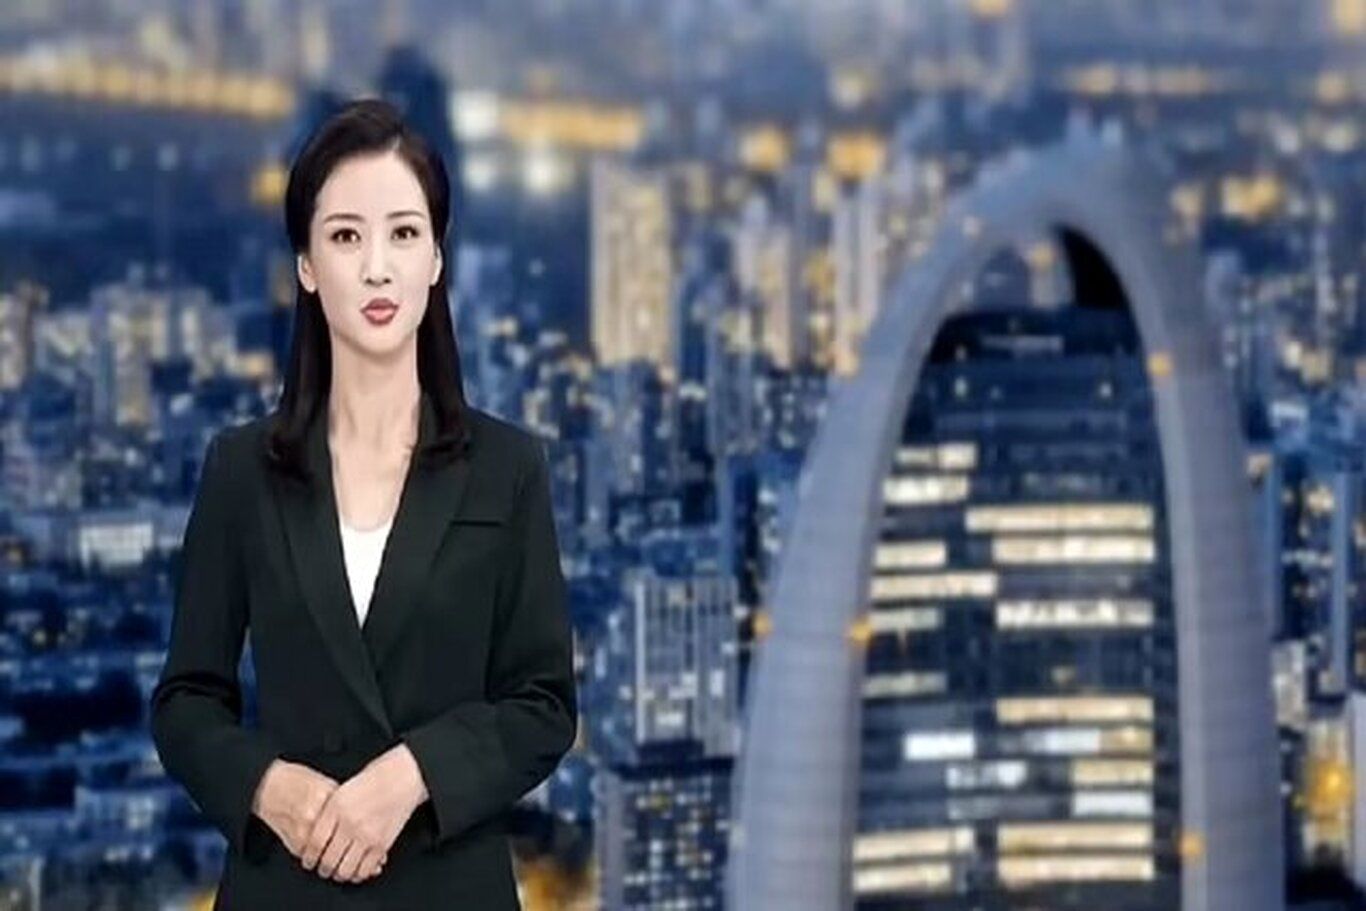 (عکس) خبر بد برای مجریان تلویزیون؛ رونمایی از مجری مصنوعی در چین!